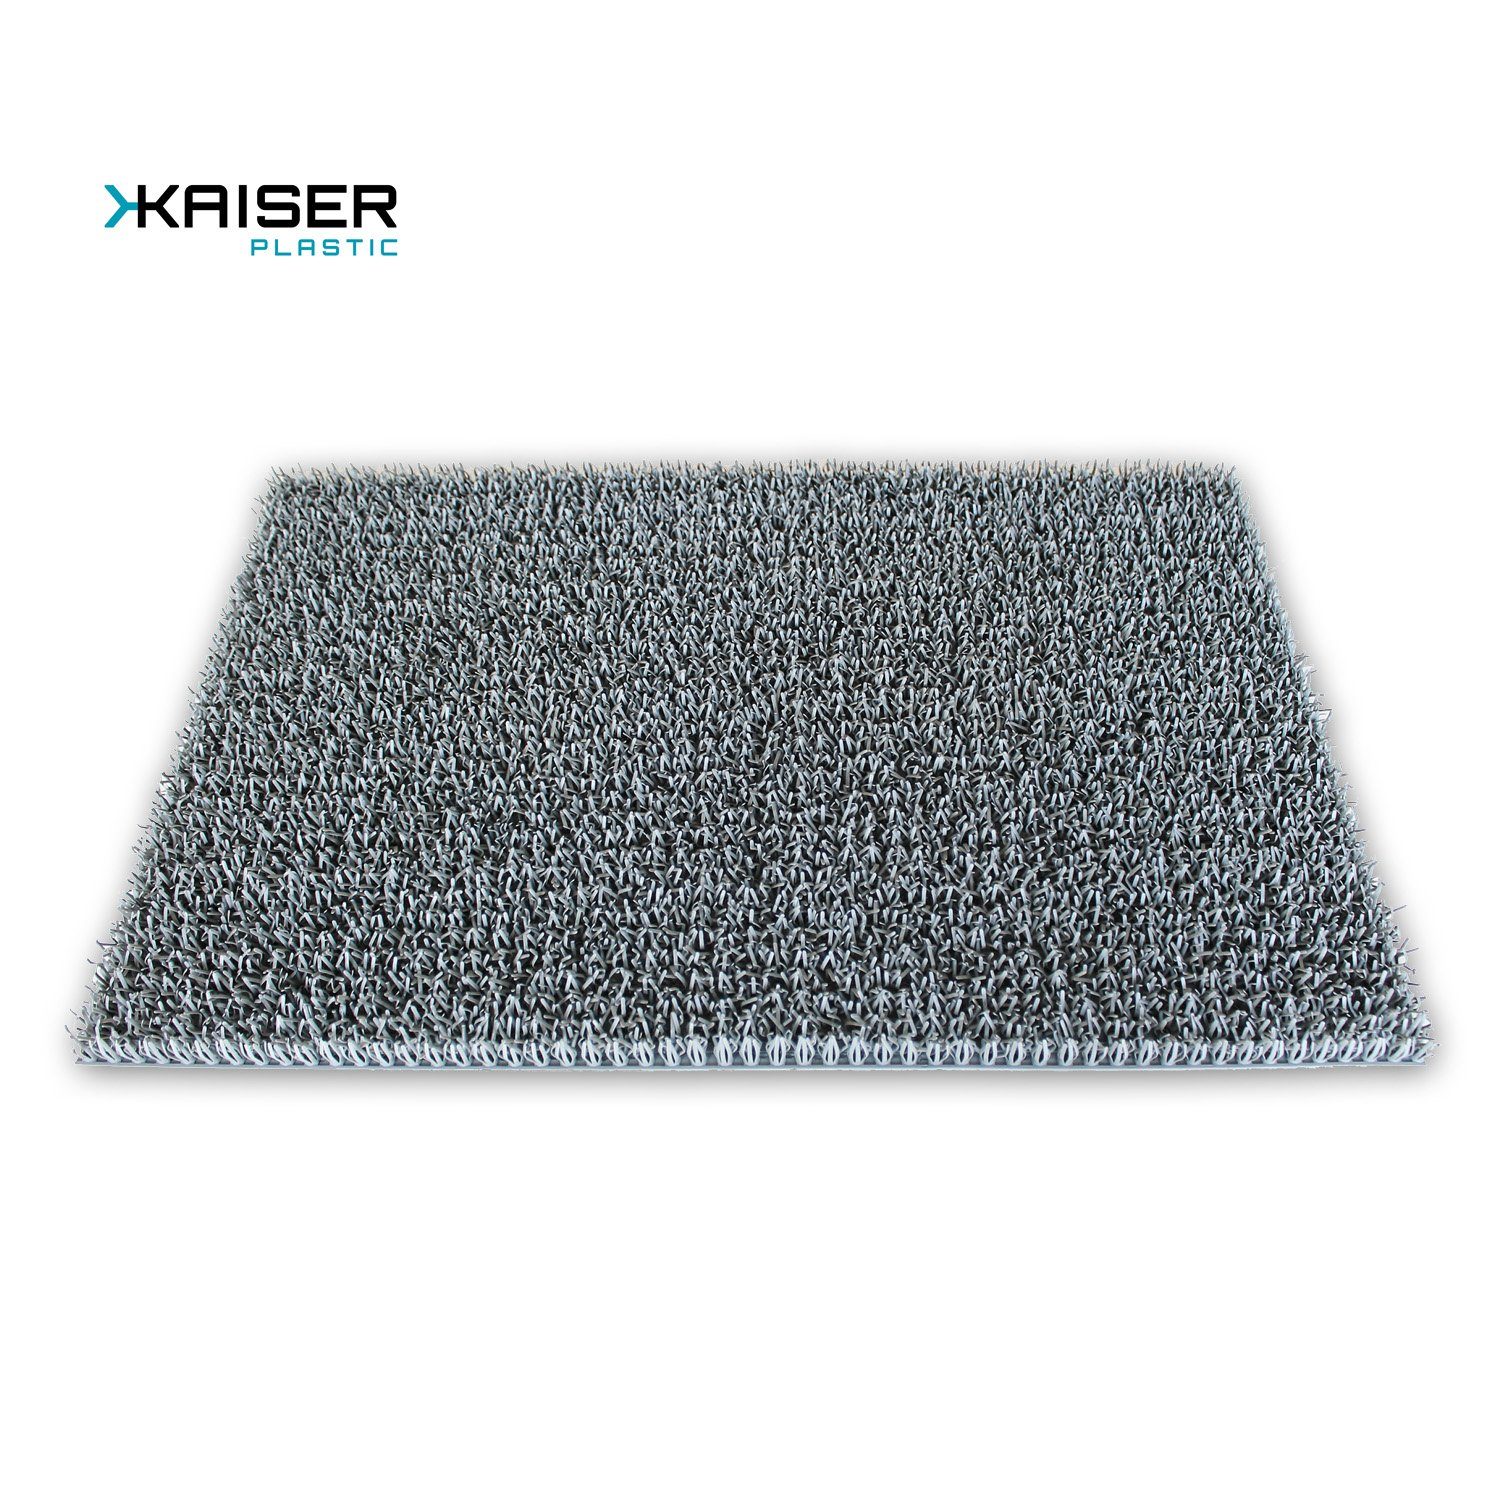 Fußmatte »Kaiser plastic Fußmatten, für außen und innen, 40 x 60 cm,  verschiedene Farben«, Kaiser plastic online kaufen | OTTO